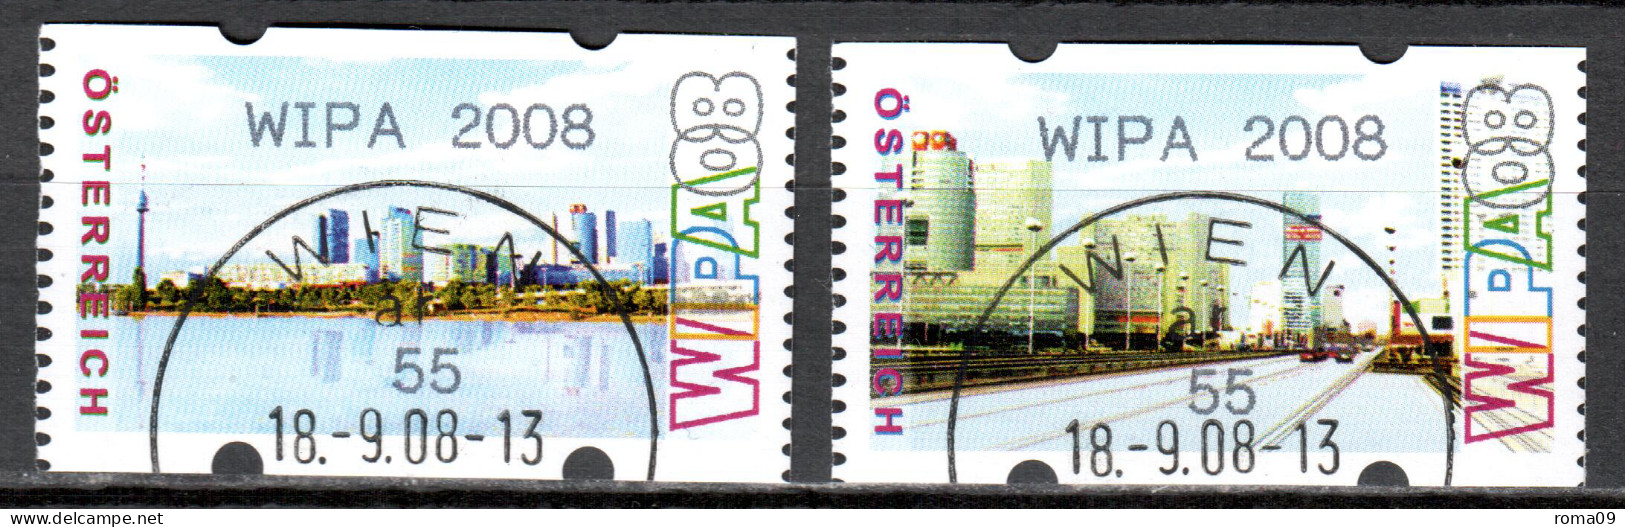 MiNr. ATM 12 + 13  C, Eindruck: „WIPA 2008“; Intern. Briefmarkenausstellung WIPA 2008, Wien: Stadtansichten; Gest. - Automatenmarken [ATM]